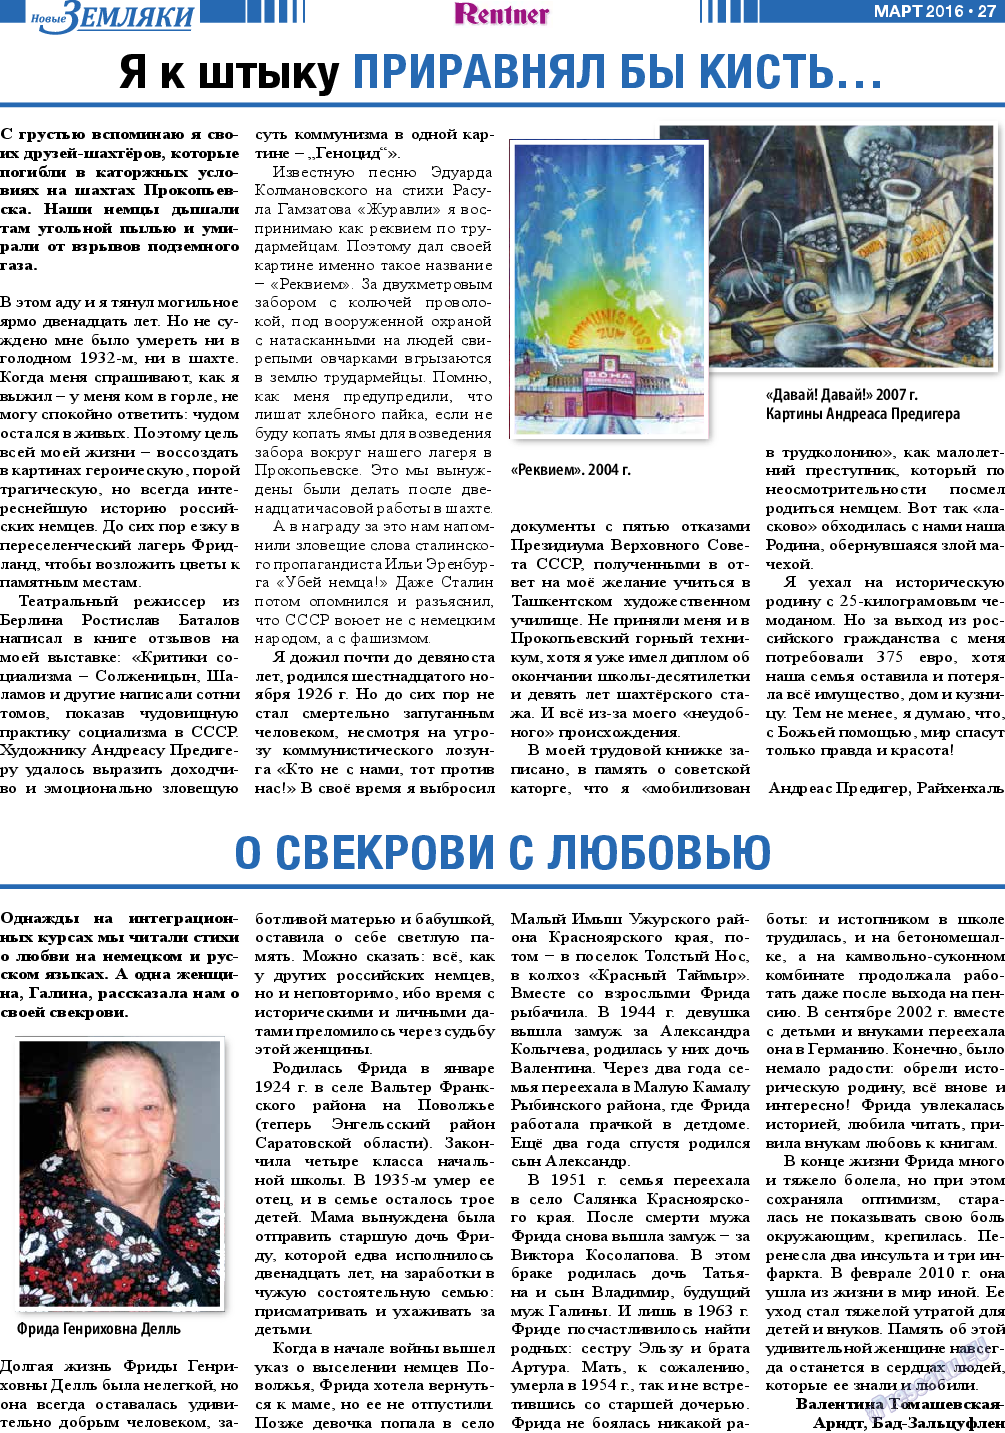 Новые Земляки (газета). 2016 год, номер 3, стр. 27